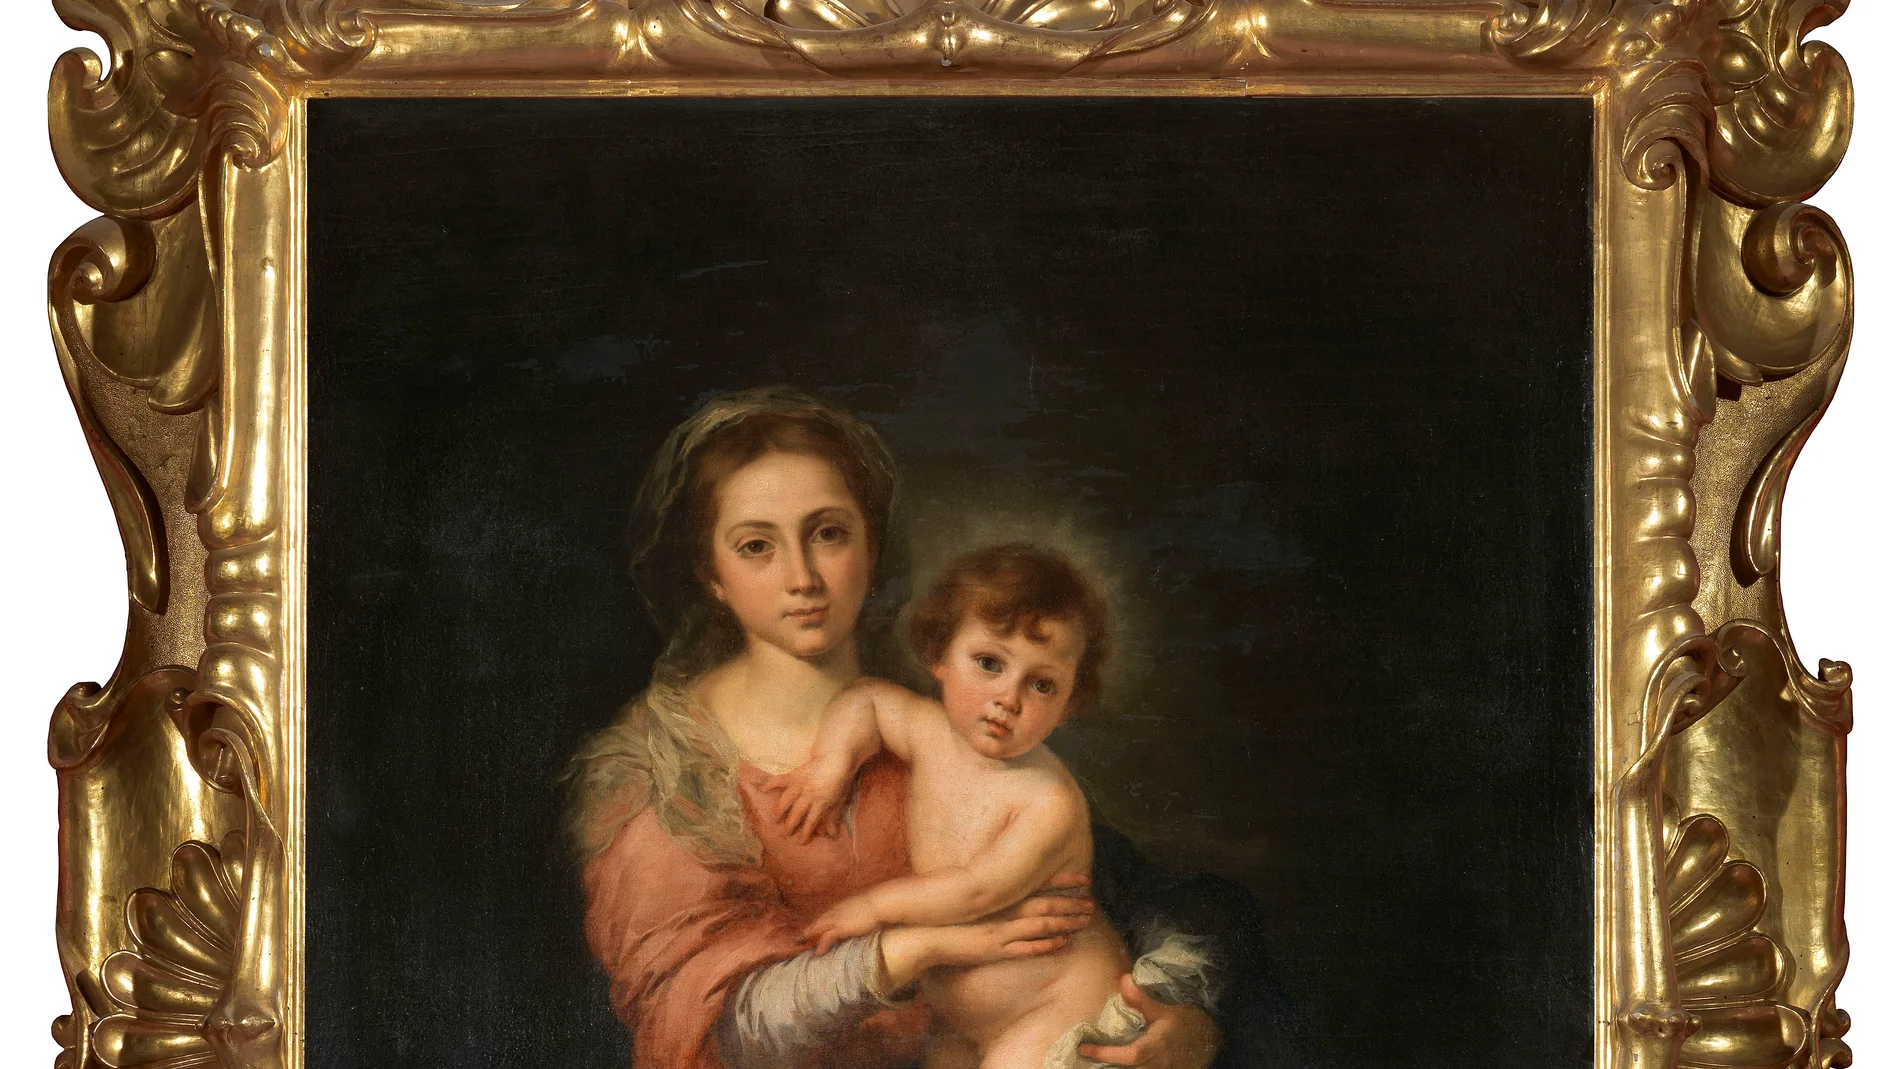 La Madonna con bambino- MurilloGalerías Uffizi. Florencia